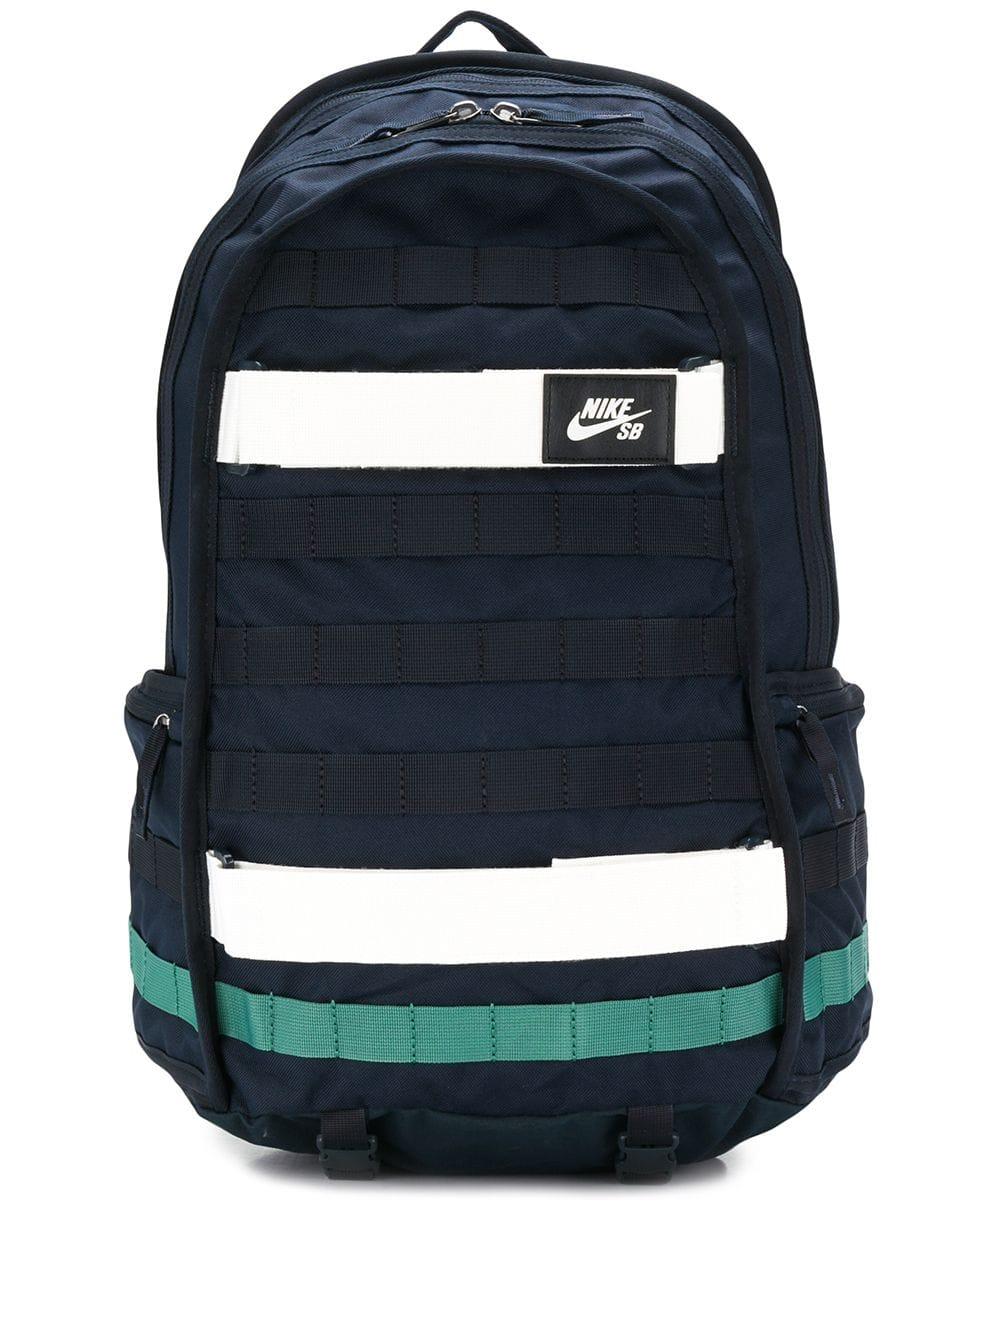 Nike Sb Rpm Skateboarding Backpack in Navy (Blue) for Men - Lyst